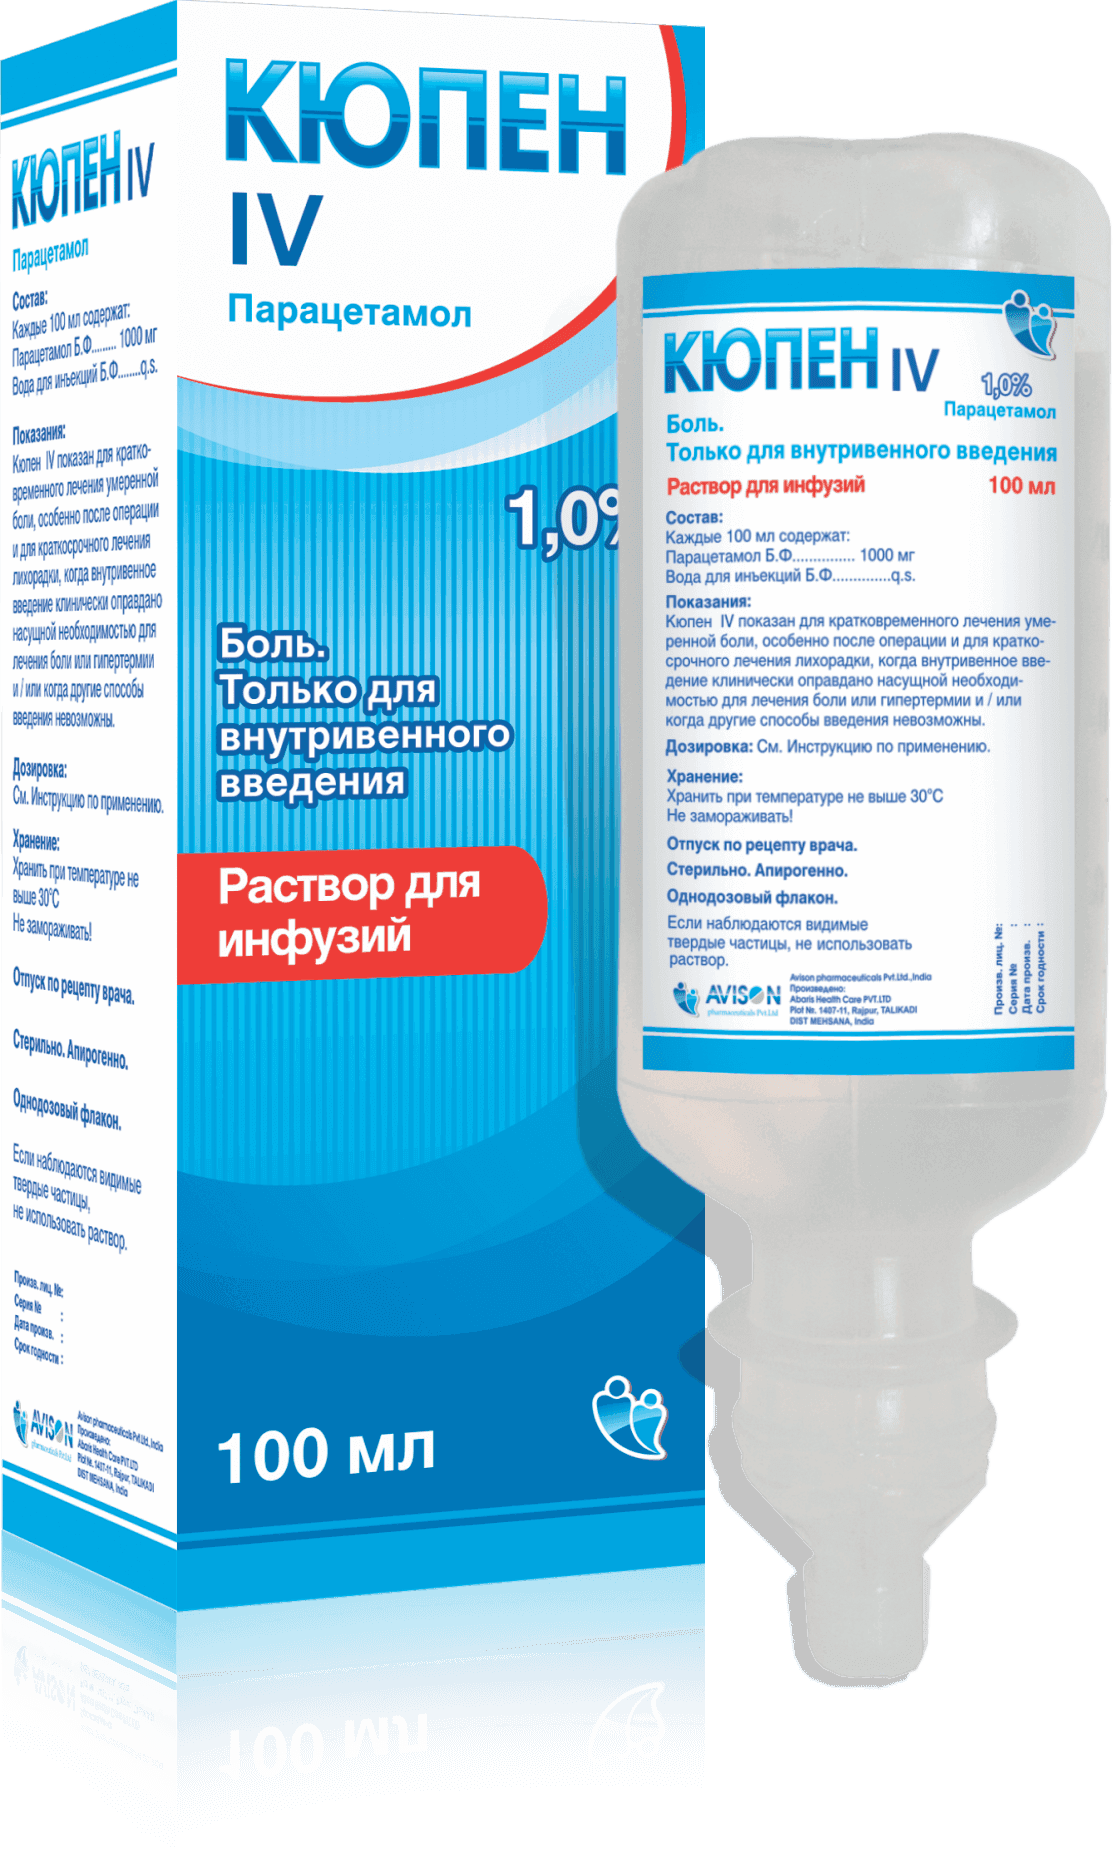 КЮПЕН IV раствор для инфузий 100 мл 1% от Avison Pharmaceuticals Pvt. Ltd